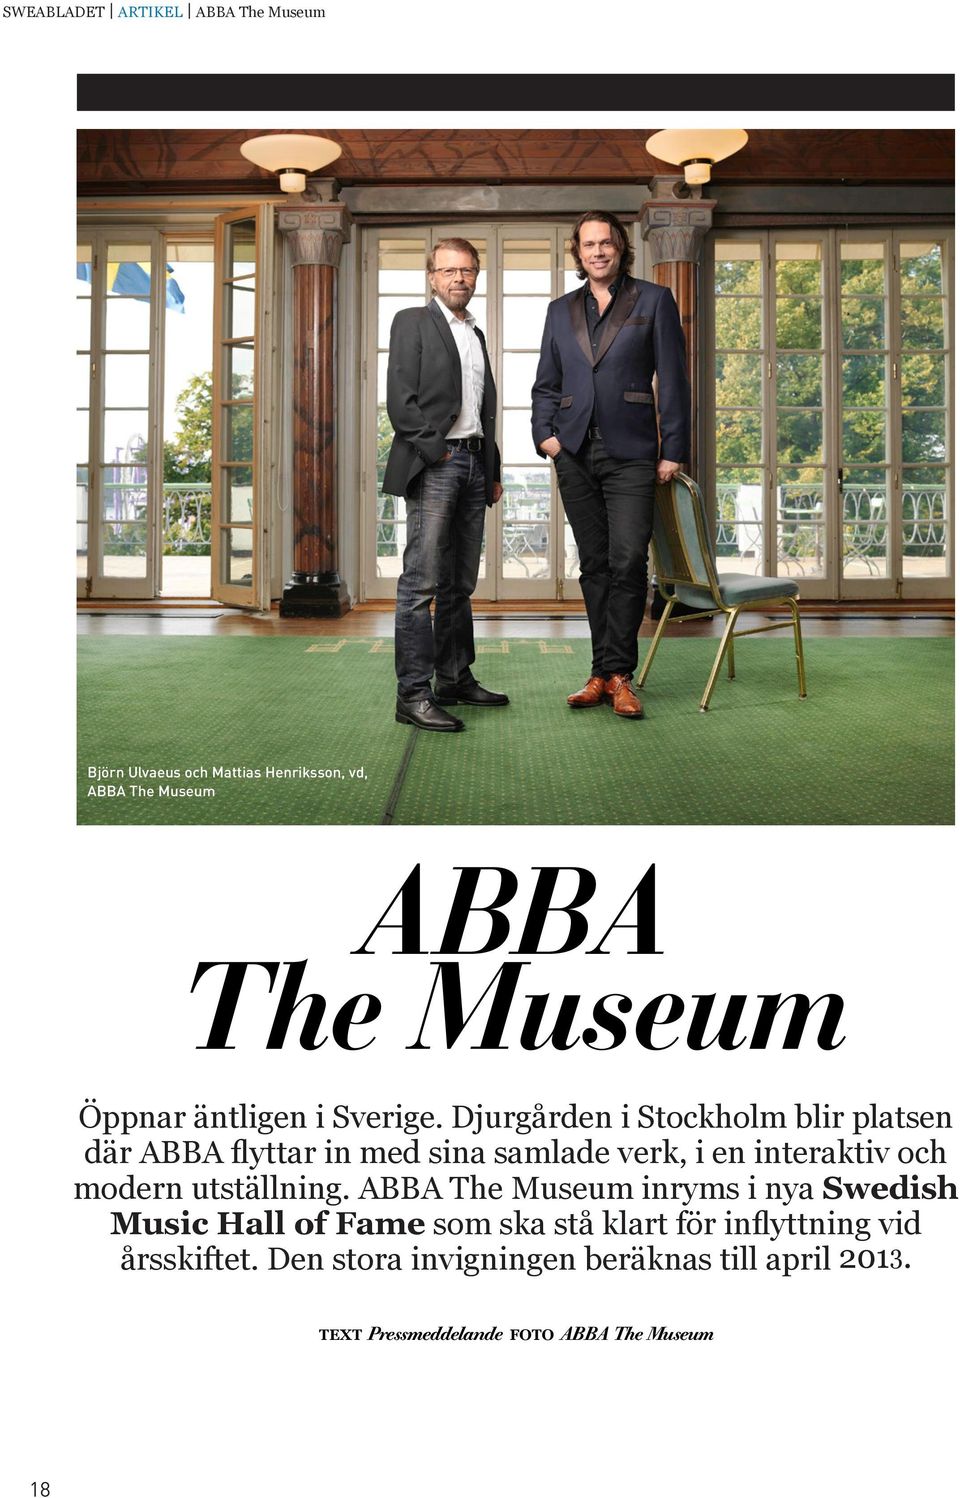 Djurgården i Stockholm blir platsen där ABBA flyttar in med sina samlade verk, i en interaktiv och modern